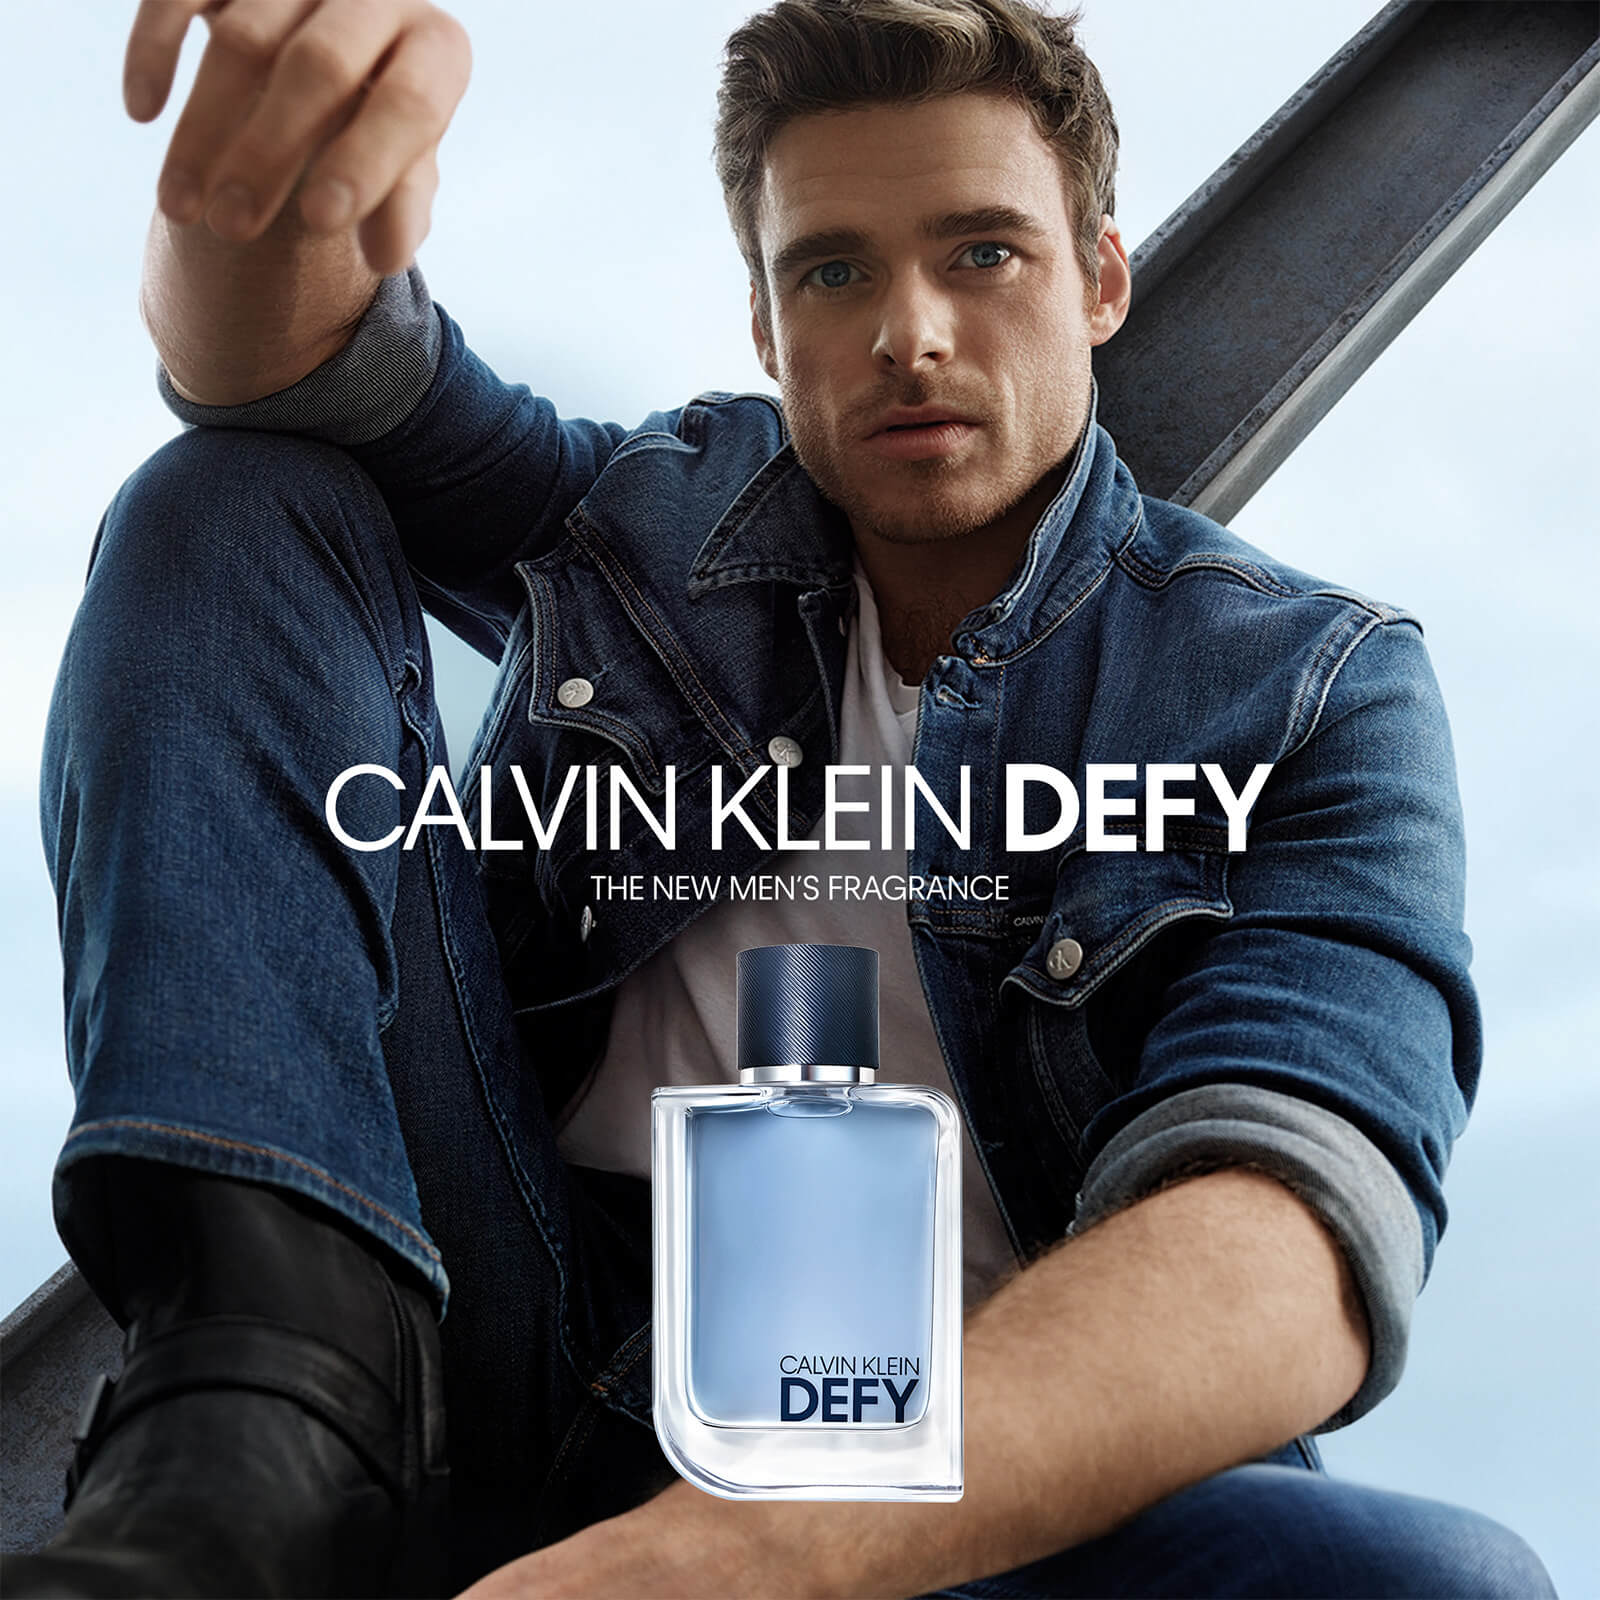 Calvin Klein Defy. The New Men's Fragrance